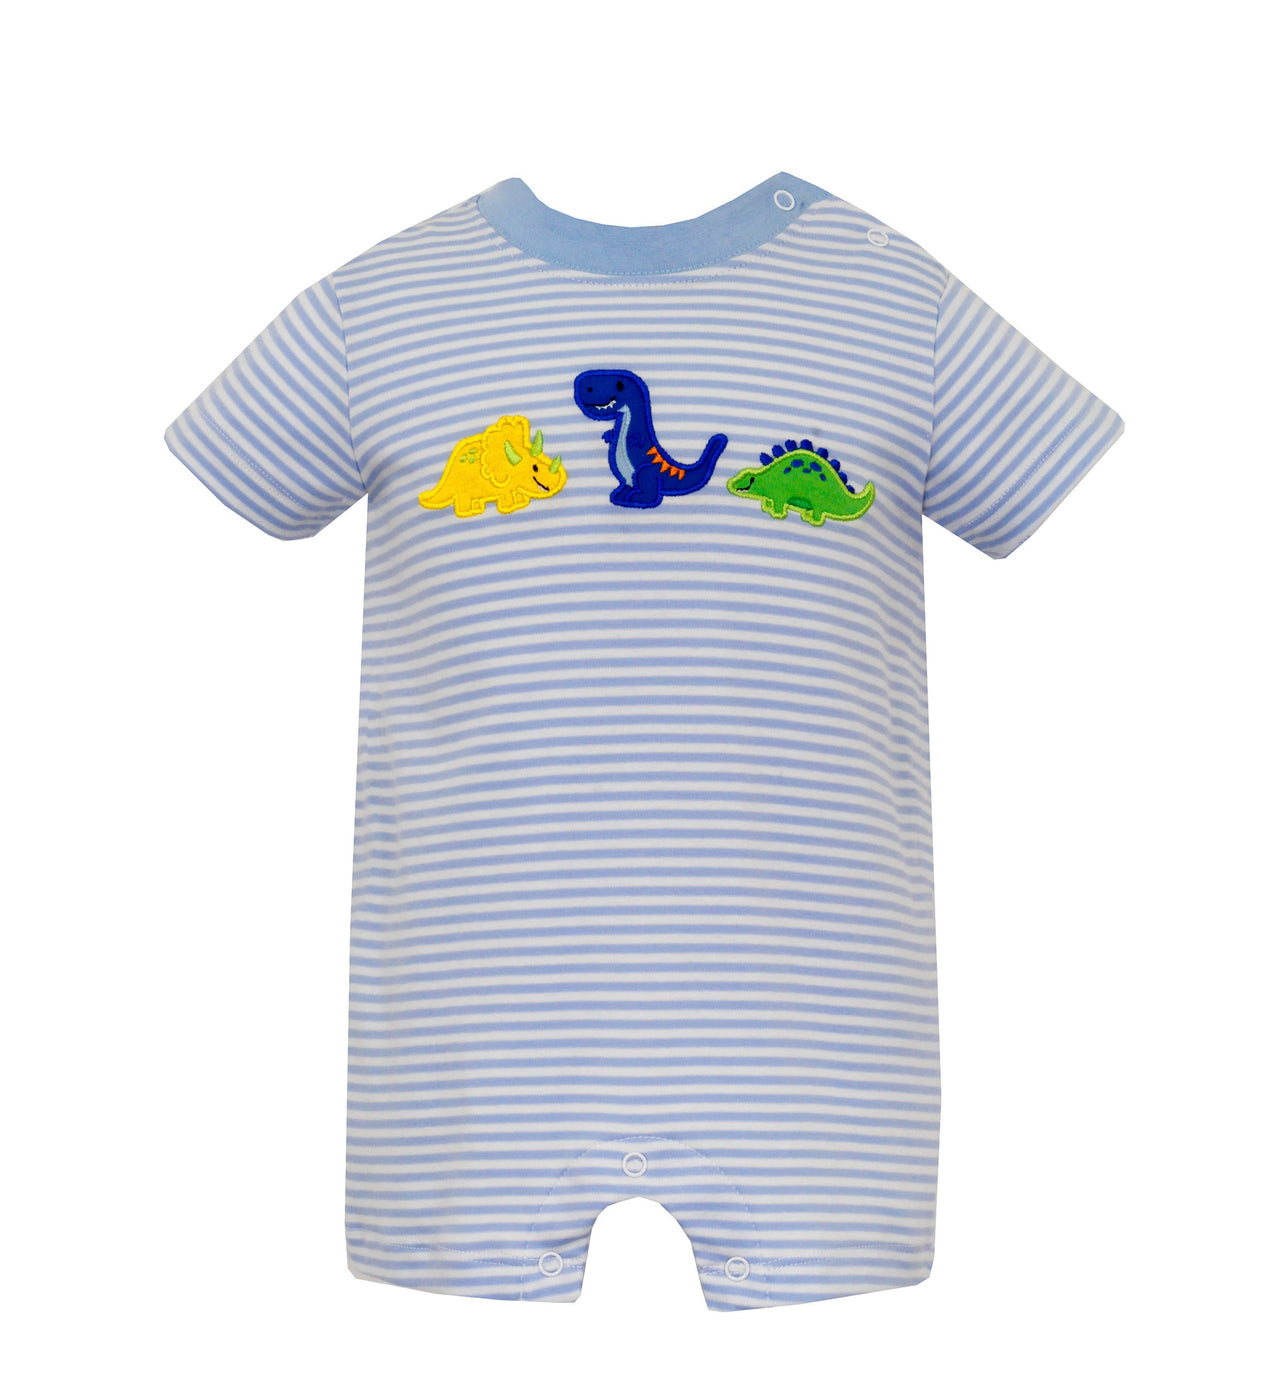 Claire & Charlie Dinosaurs Lt Blue Knit stripe Boy's Romper 5050H-CS24 5101